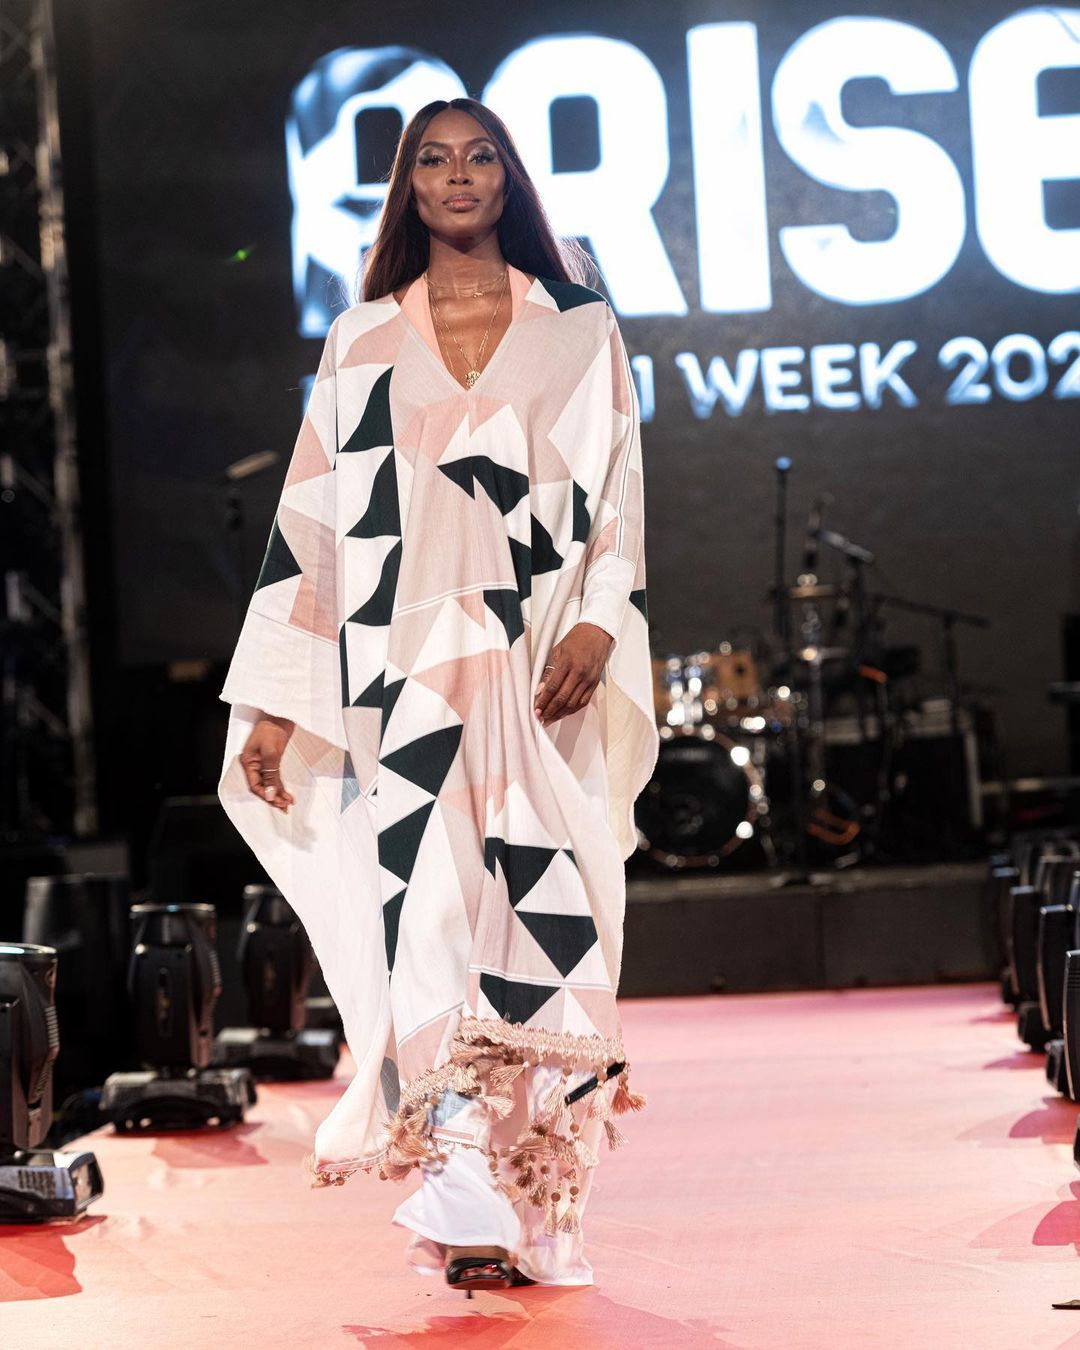 arise-fashion-week-2020-day-2